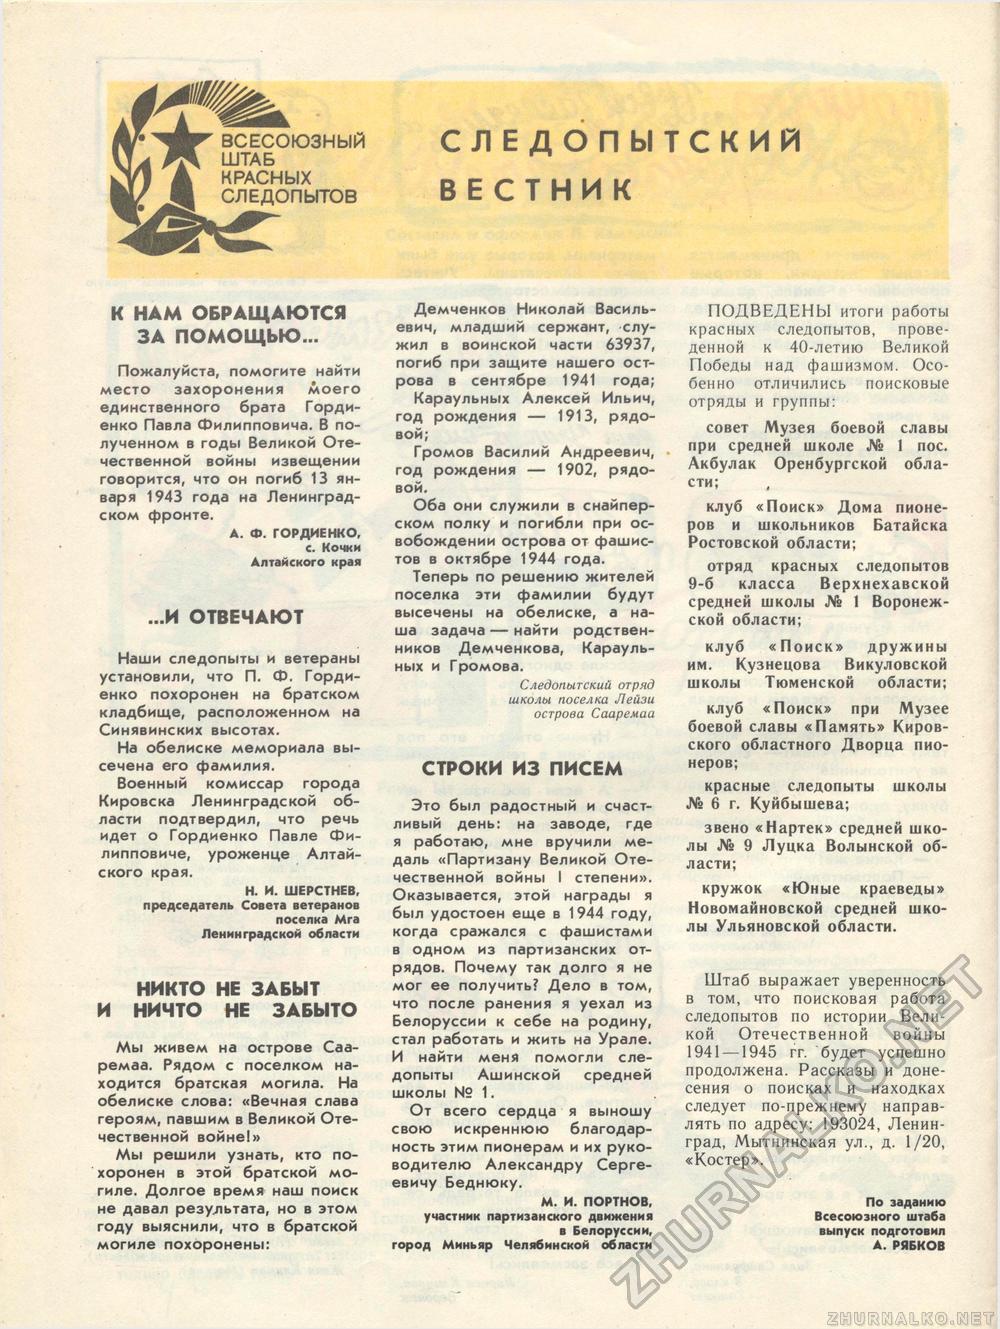  1986-01,  51